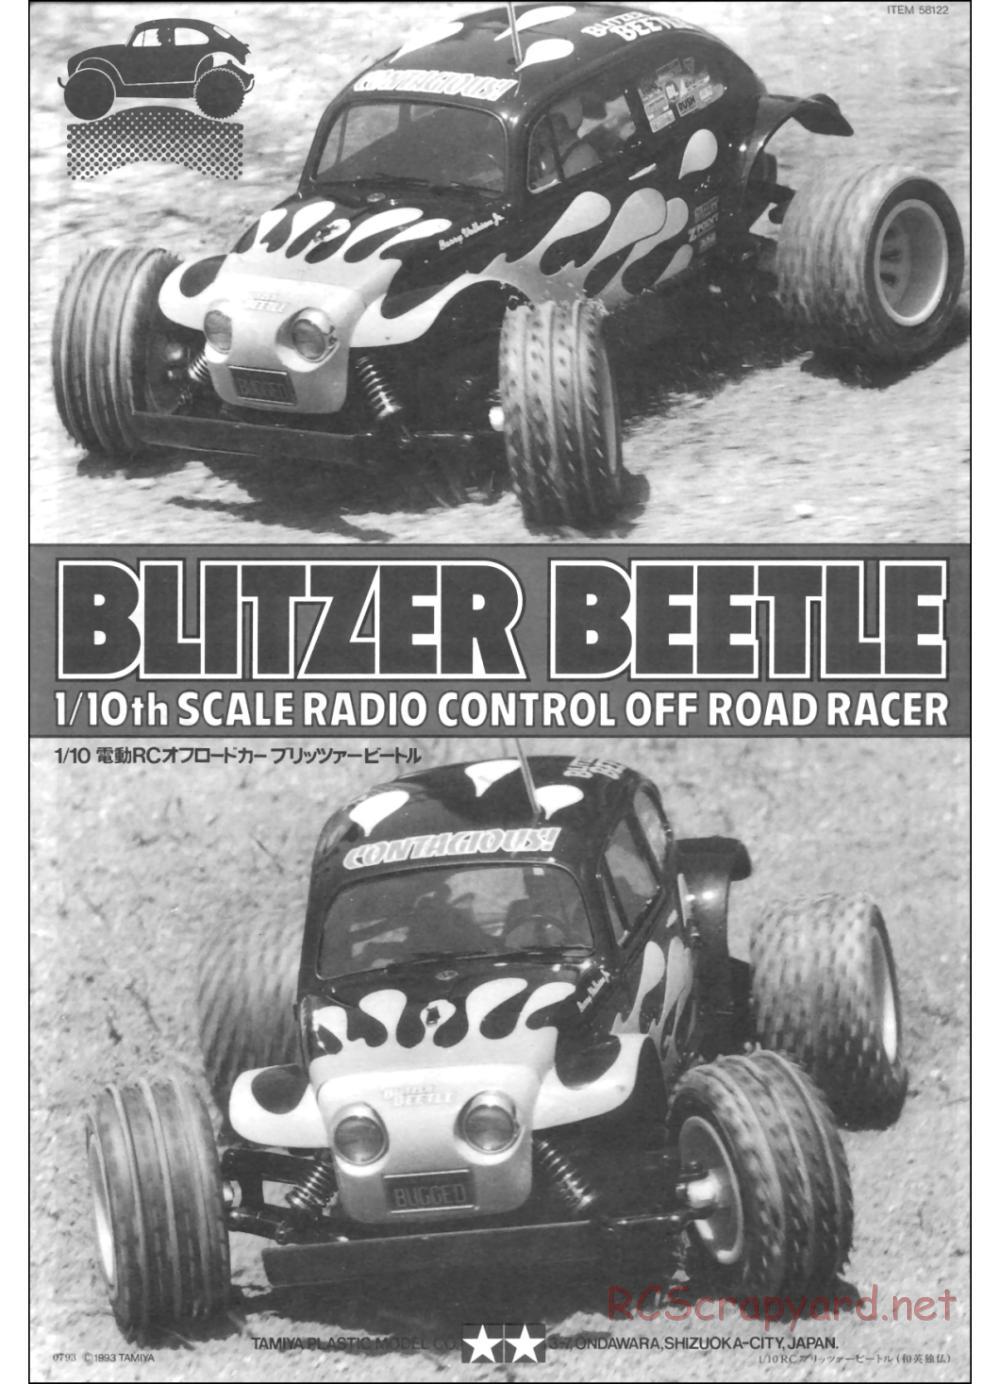 Tamiya - Blitzer Beetle Chassis - Manual - Page 1